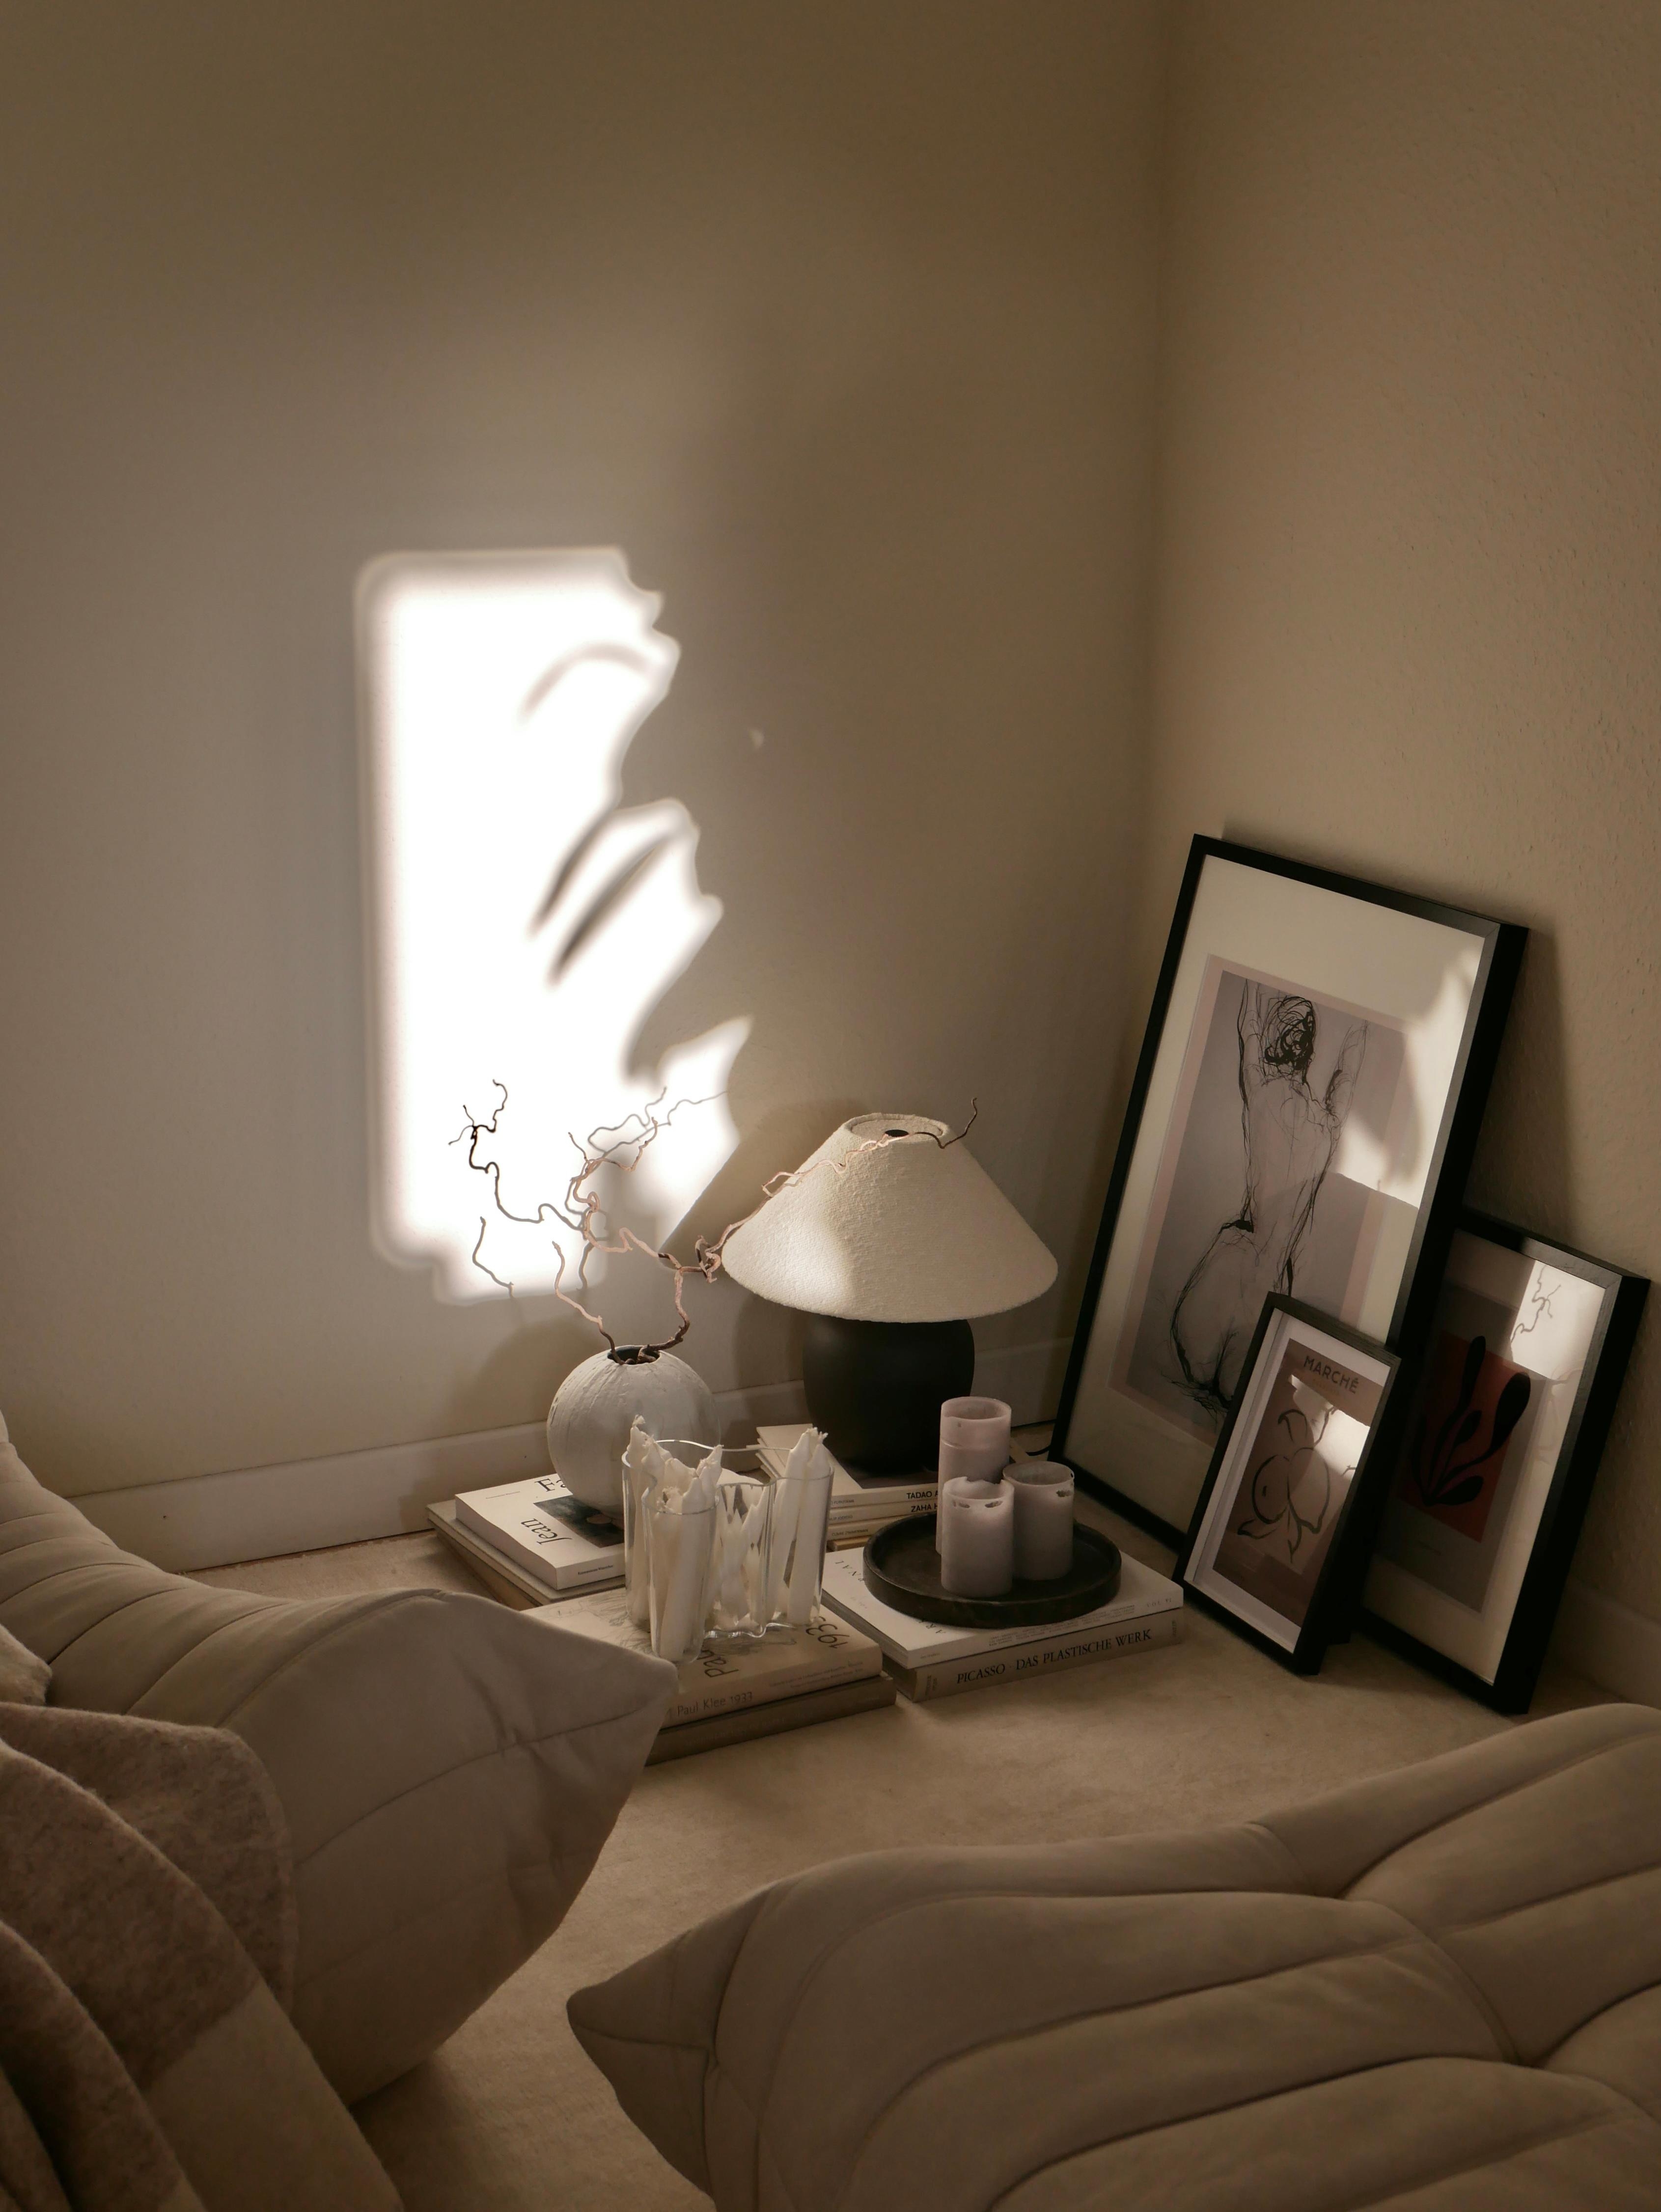 #allbeige die kleine Ecke neben dem Sofa... #altbau #togosofa #beigewalls #light #shadows #juniqeartshop #couchstyle